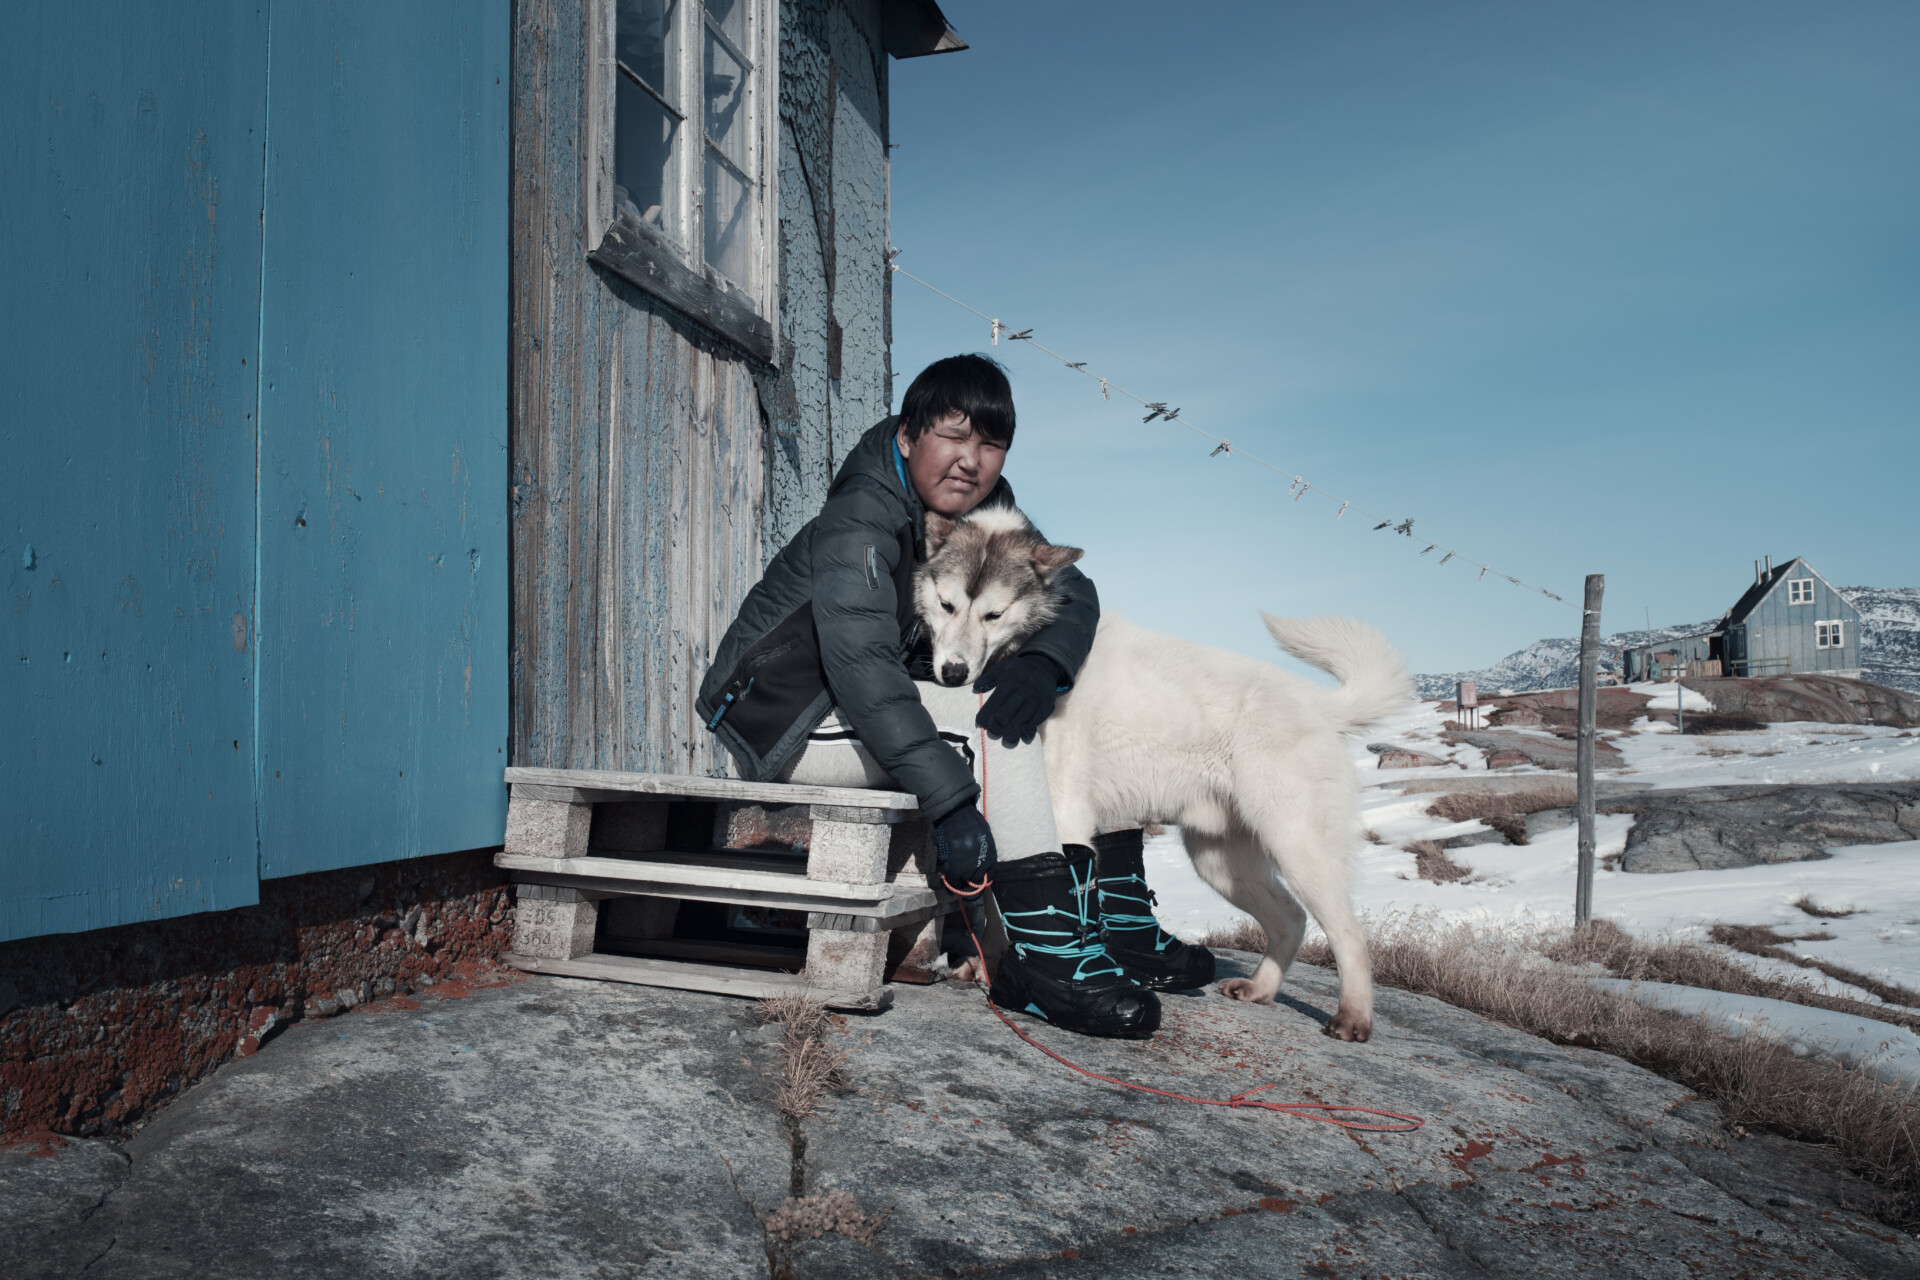 Groenland 2 Malik Overleven, hét boek dat je moet lezen over de klimaatcrisis: 'We hebben de natuur jarenlang misbruikt en uitgebuit, en nu slaat ze keihard terug'